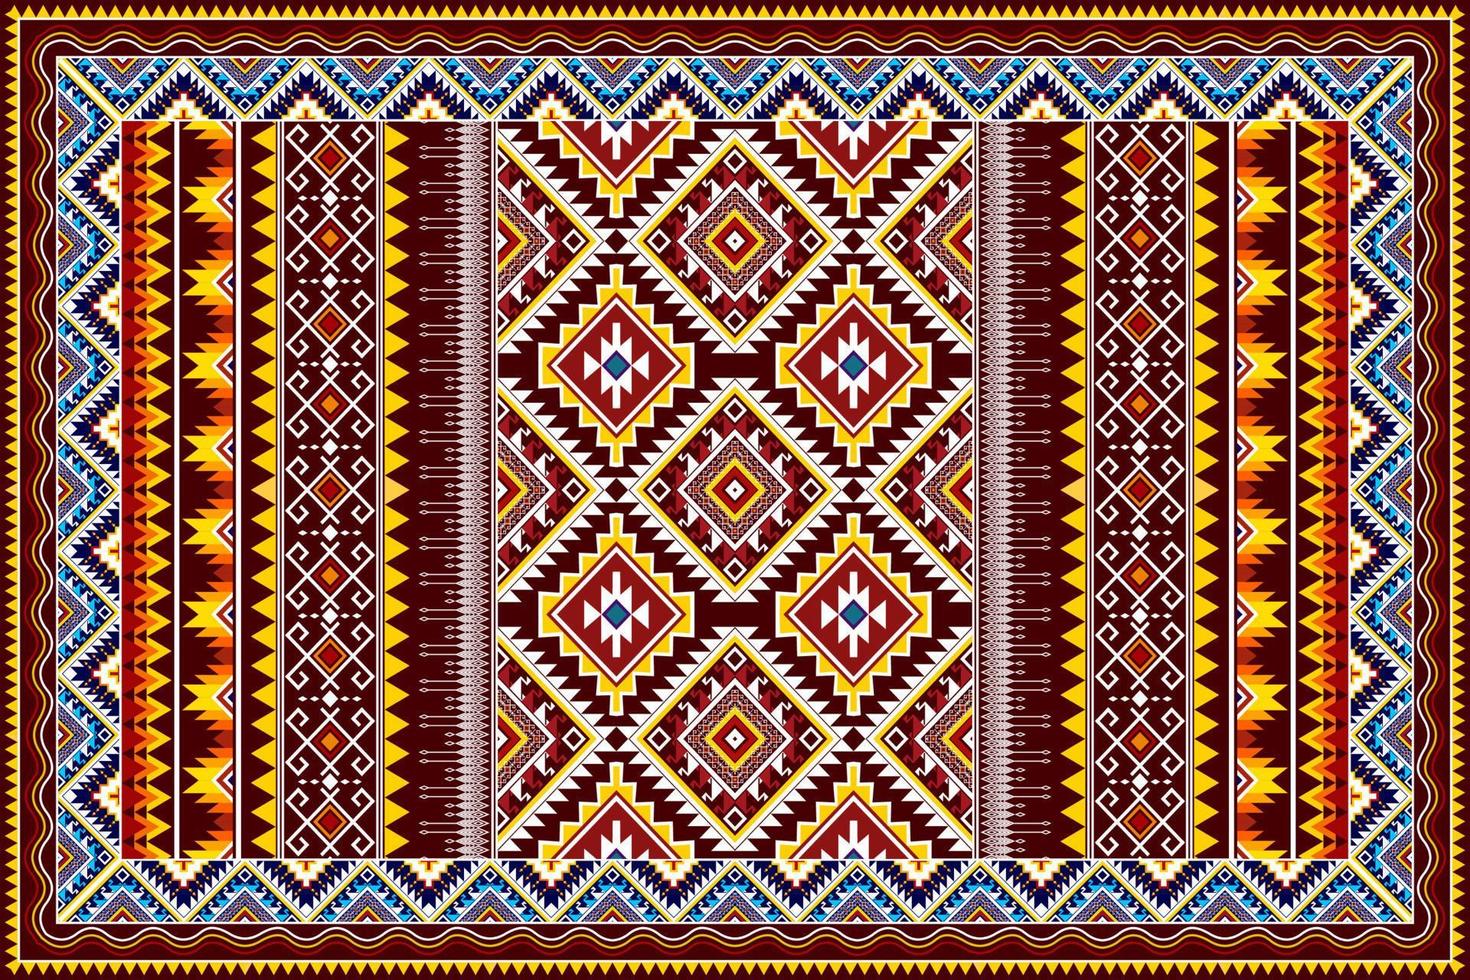 conception de motif ethnique géométrique abstrait ikat. tapis en tissu aztèque ornement mandala ethnique chevron textile décoration papier peint. tribal boho natif ethnique turquie vecteur de broderie traditionnelle